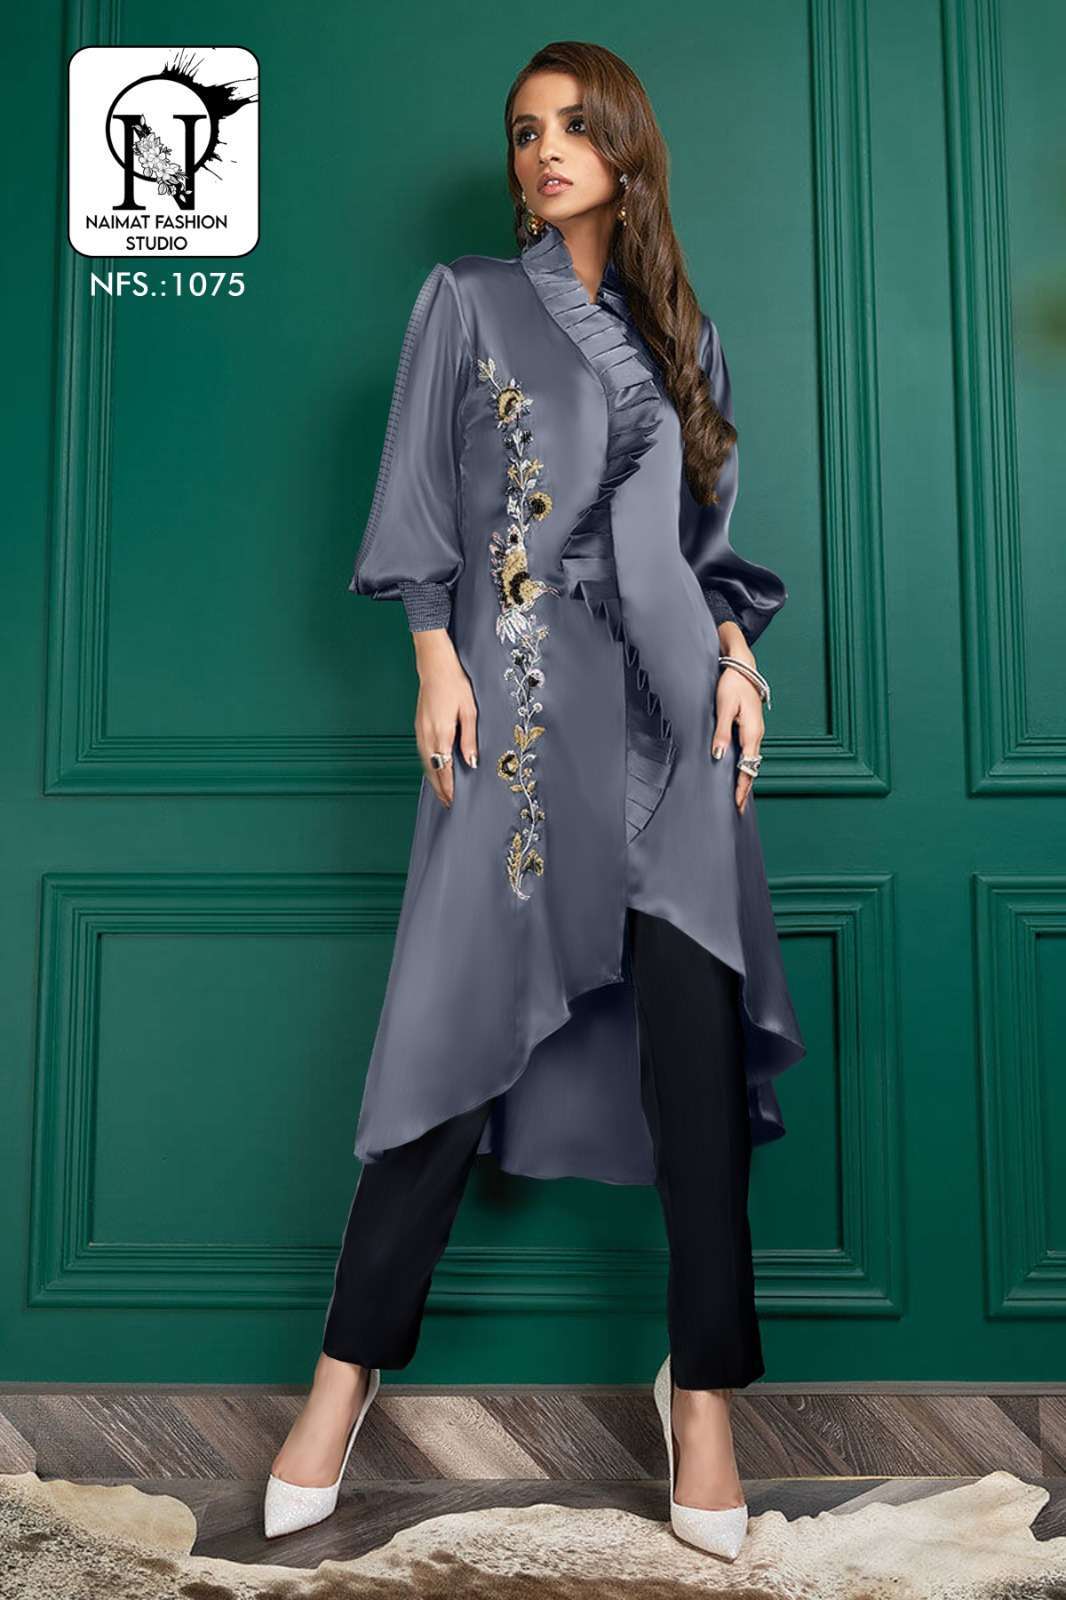 naimat 1075 Imported Fancy Fabrics tunic